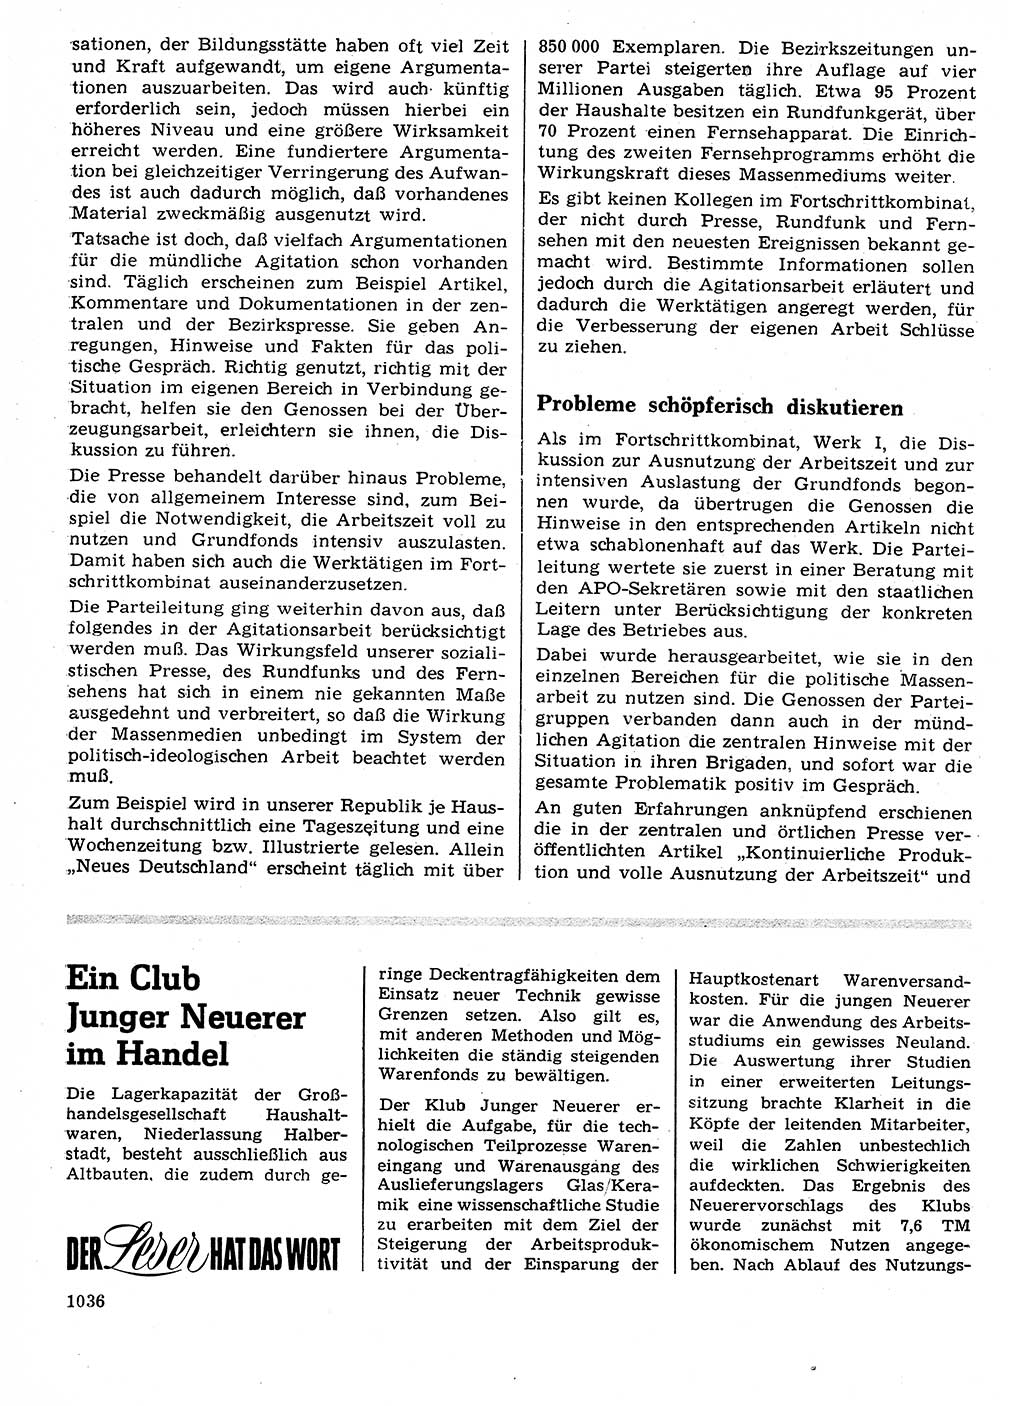 Neuer Weg (NW), Organ des Zentralkomitees (ZK) der SED (Sozialistische Einheitspartei Deutschlands) für Fragen des Parteilebens, 24. Jahrgang [Deutsche Demokratische Republik (DDR)] 1969, Seite 1036 (NW ZK SED DDR 1969, S. 1036)